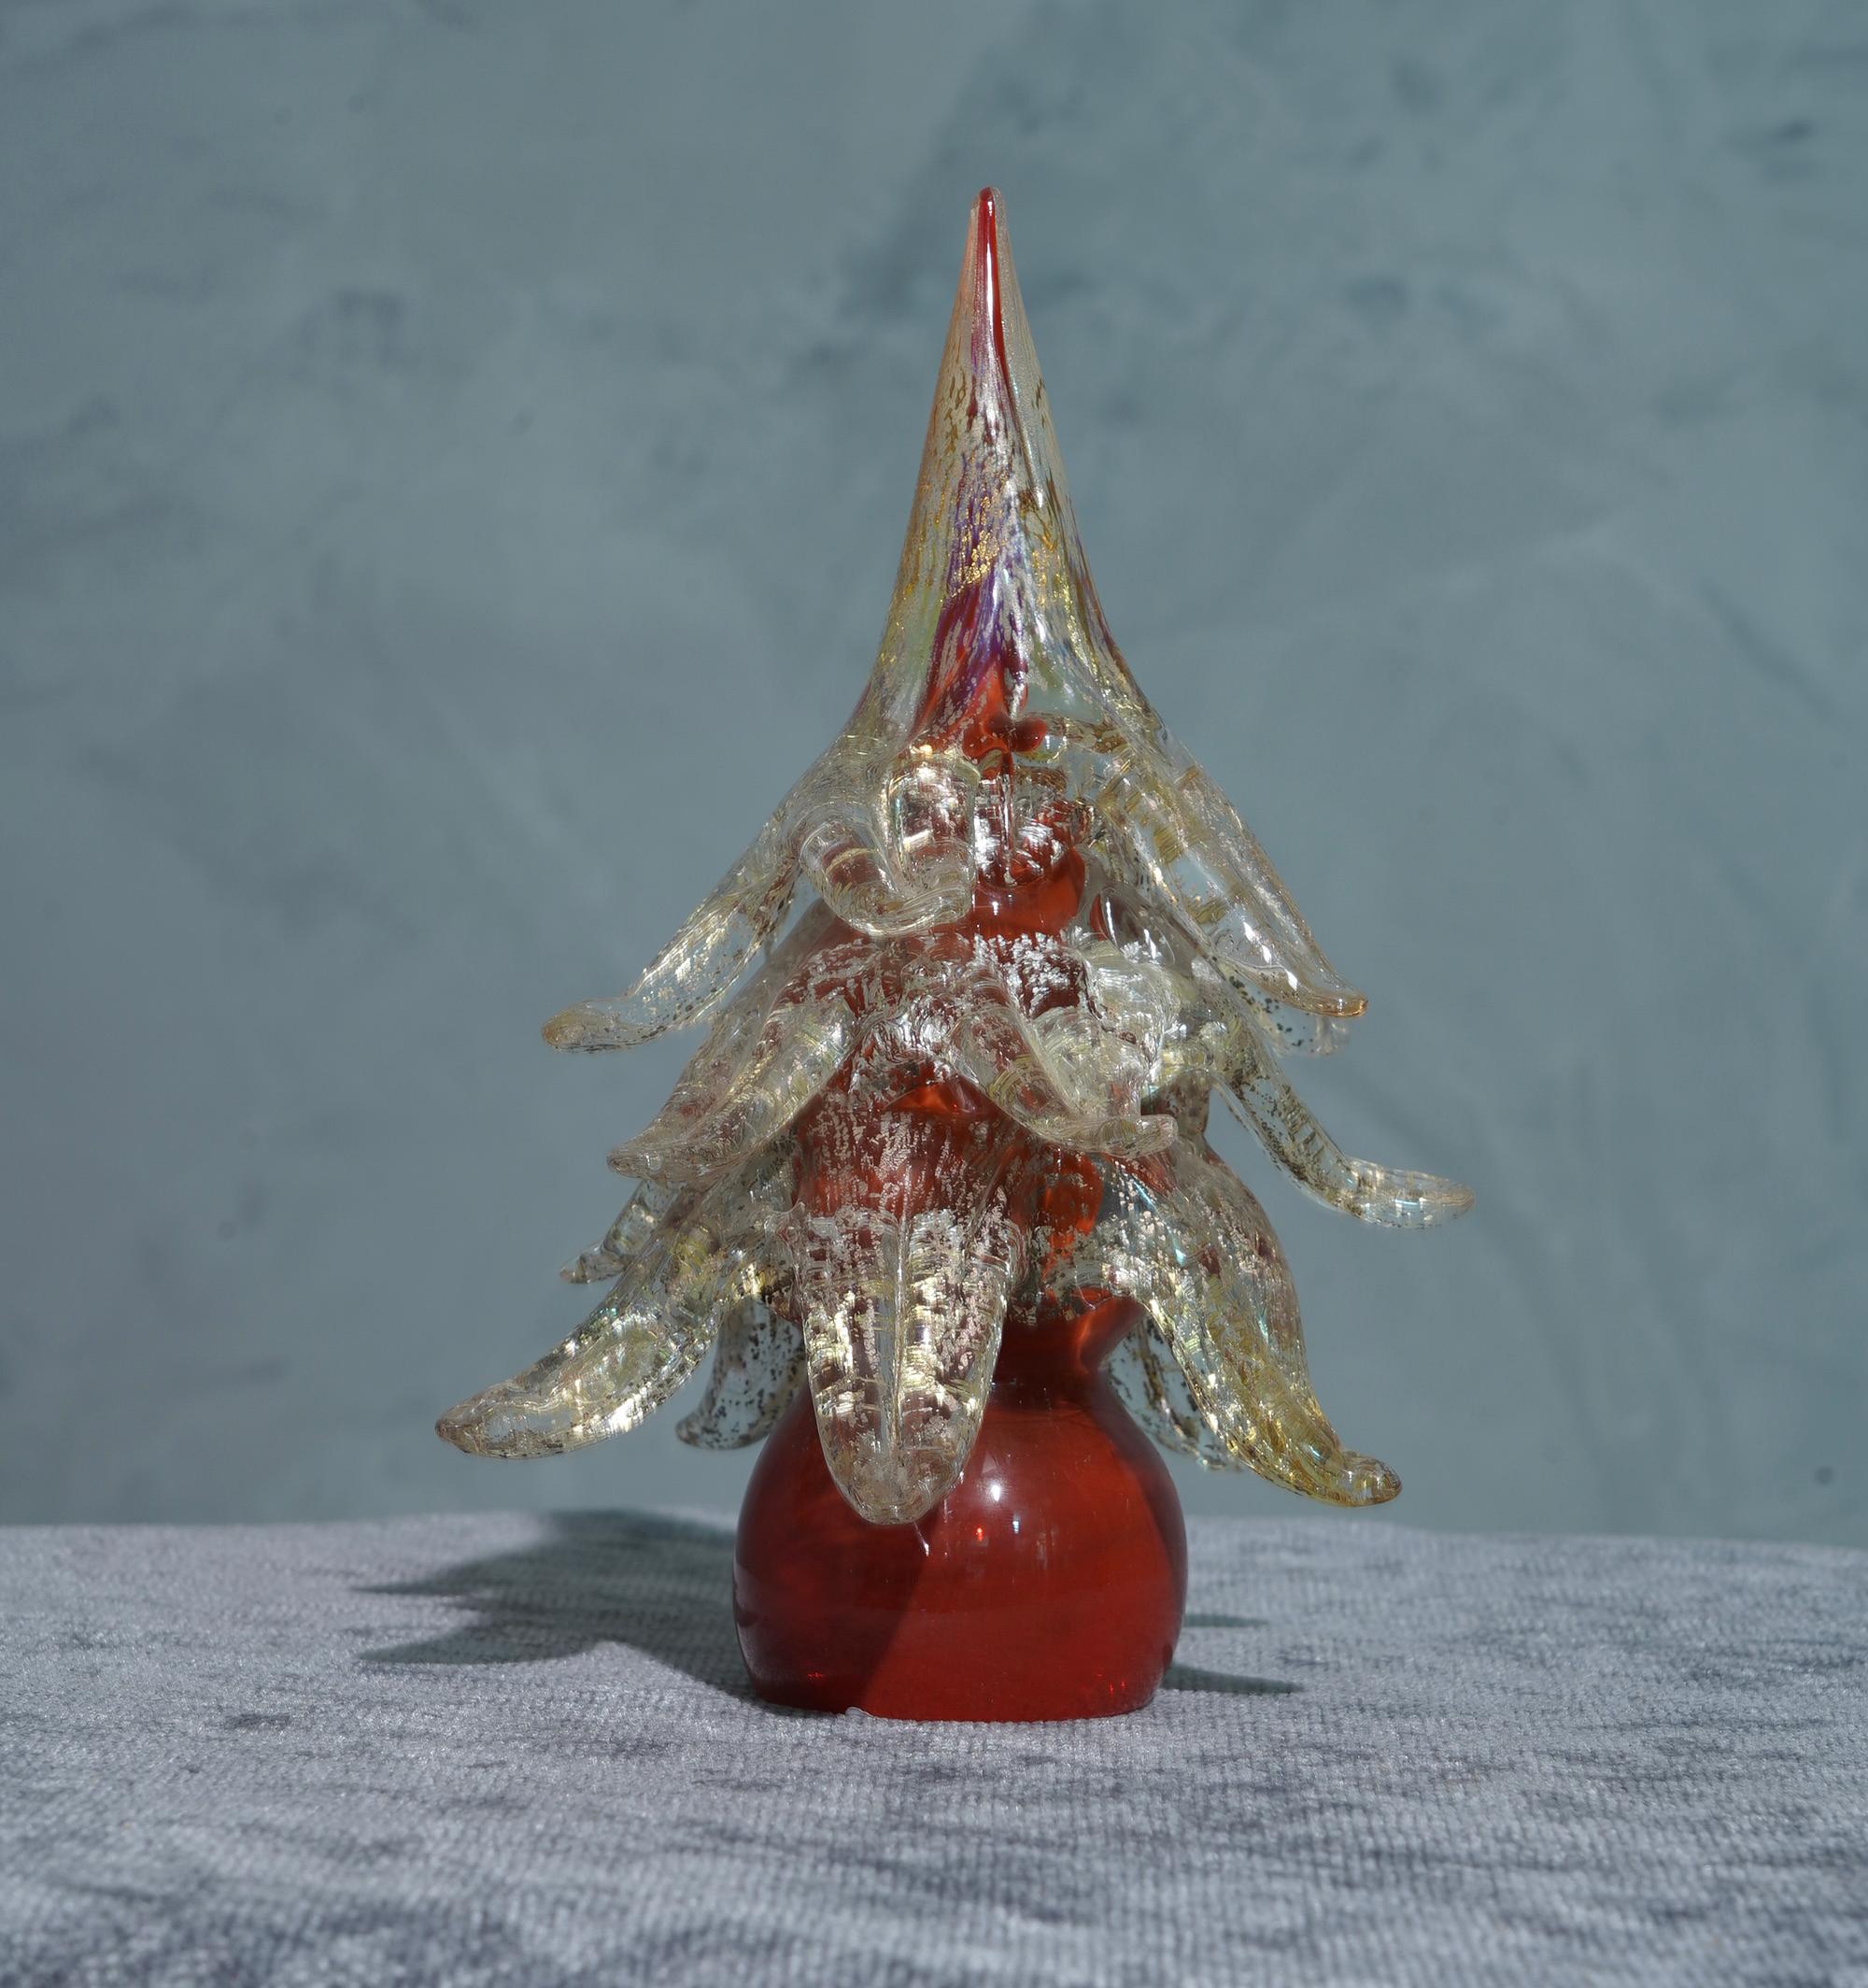 Sculpture très particulière d'Arbre en verre de Murano, stylisé et linéaire comme l'art du verre de Venise le commande.

La sculpture représente un arbre de Noël stylisé, avec une tige rouge et de grandes feuilles transparentes avec des taches d'or